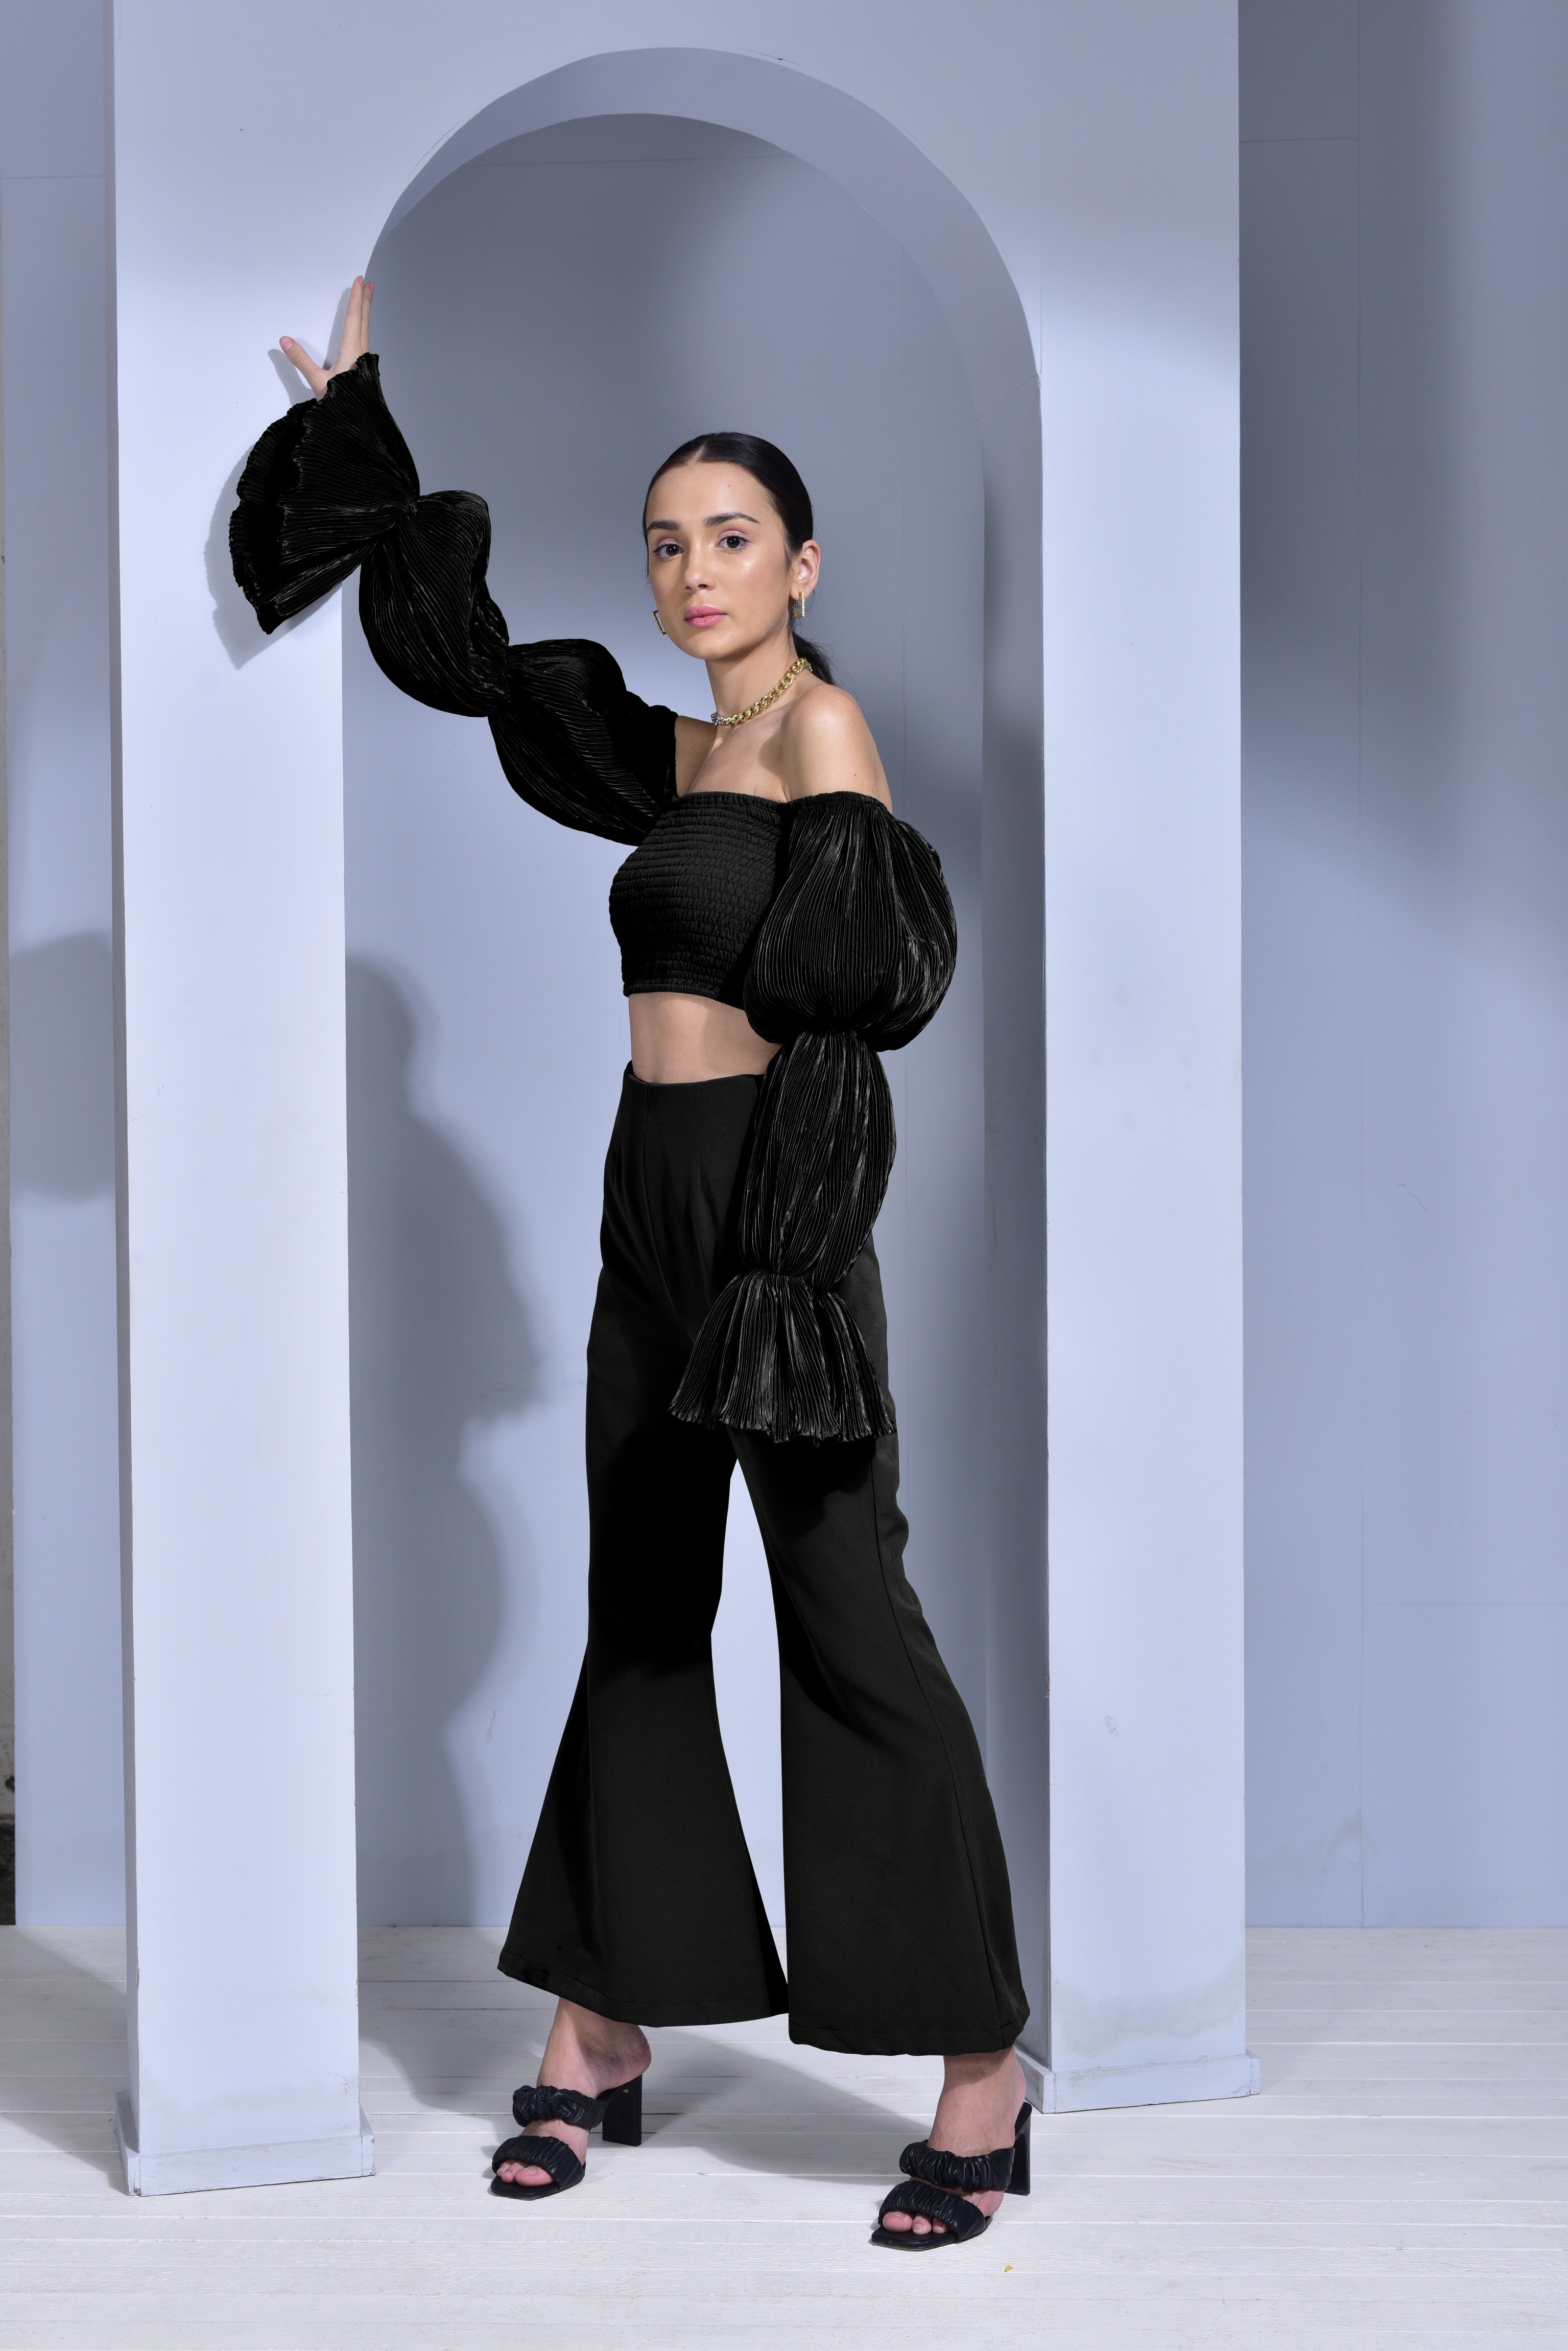 Nougat London Black Silk Blend Tuxedo Trousers Size 2 12 Lace & Satin  Detail | eBay